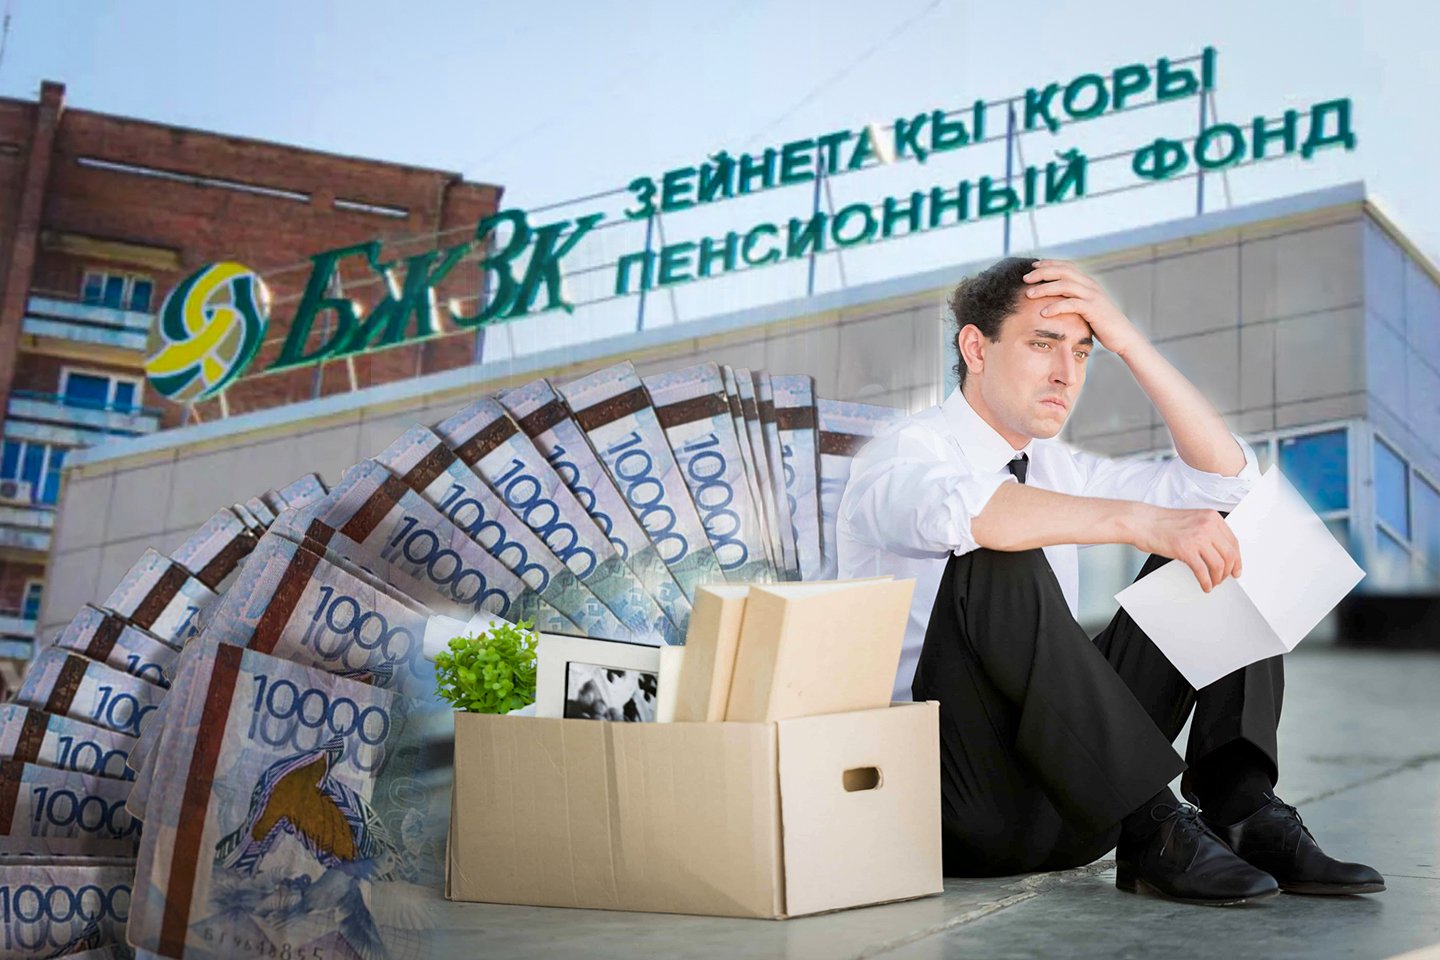 Пенсионные накопления рк. Пенсионные накопления Казахстан. Пороговый уровень для снятия пенсионных накоплений в Казахстане. Порог достаточности пенсионных накоплений в Казахстане.